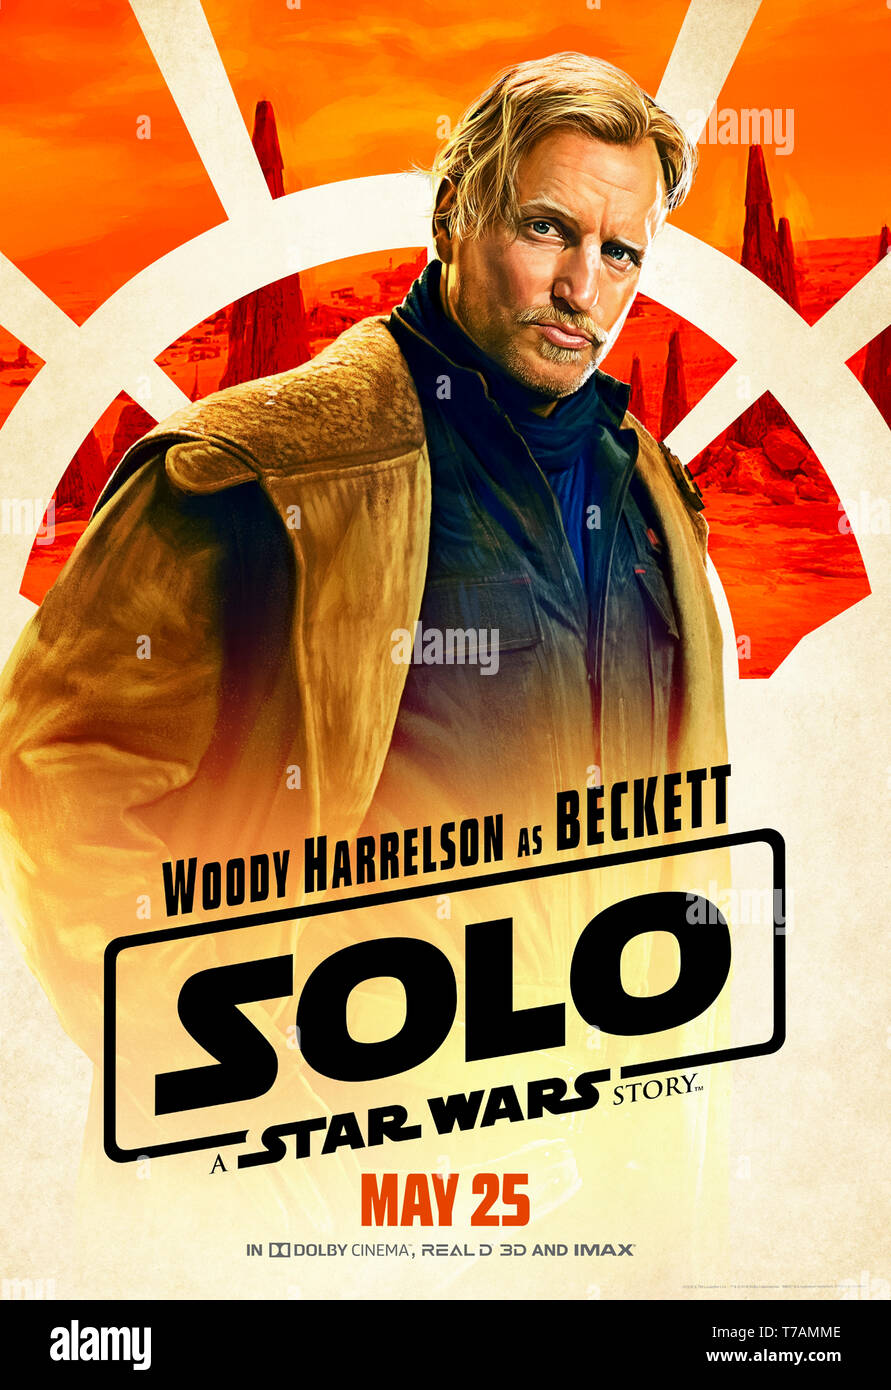 Solo: ein Star Wars Geschichte (2018) unter der Regie von Ron Howard und mit Woody Harrelson als Beckett. Stockfoto